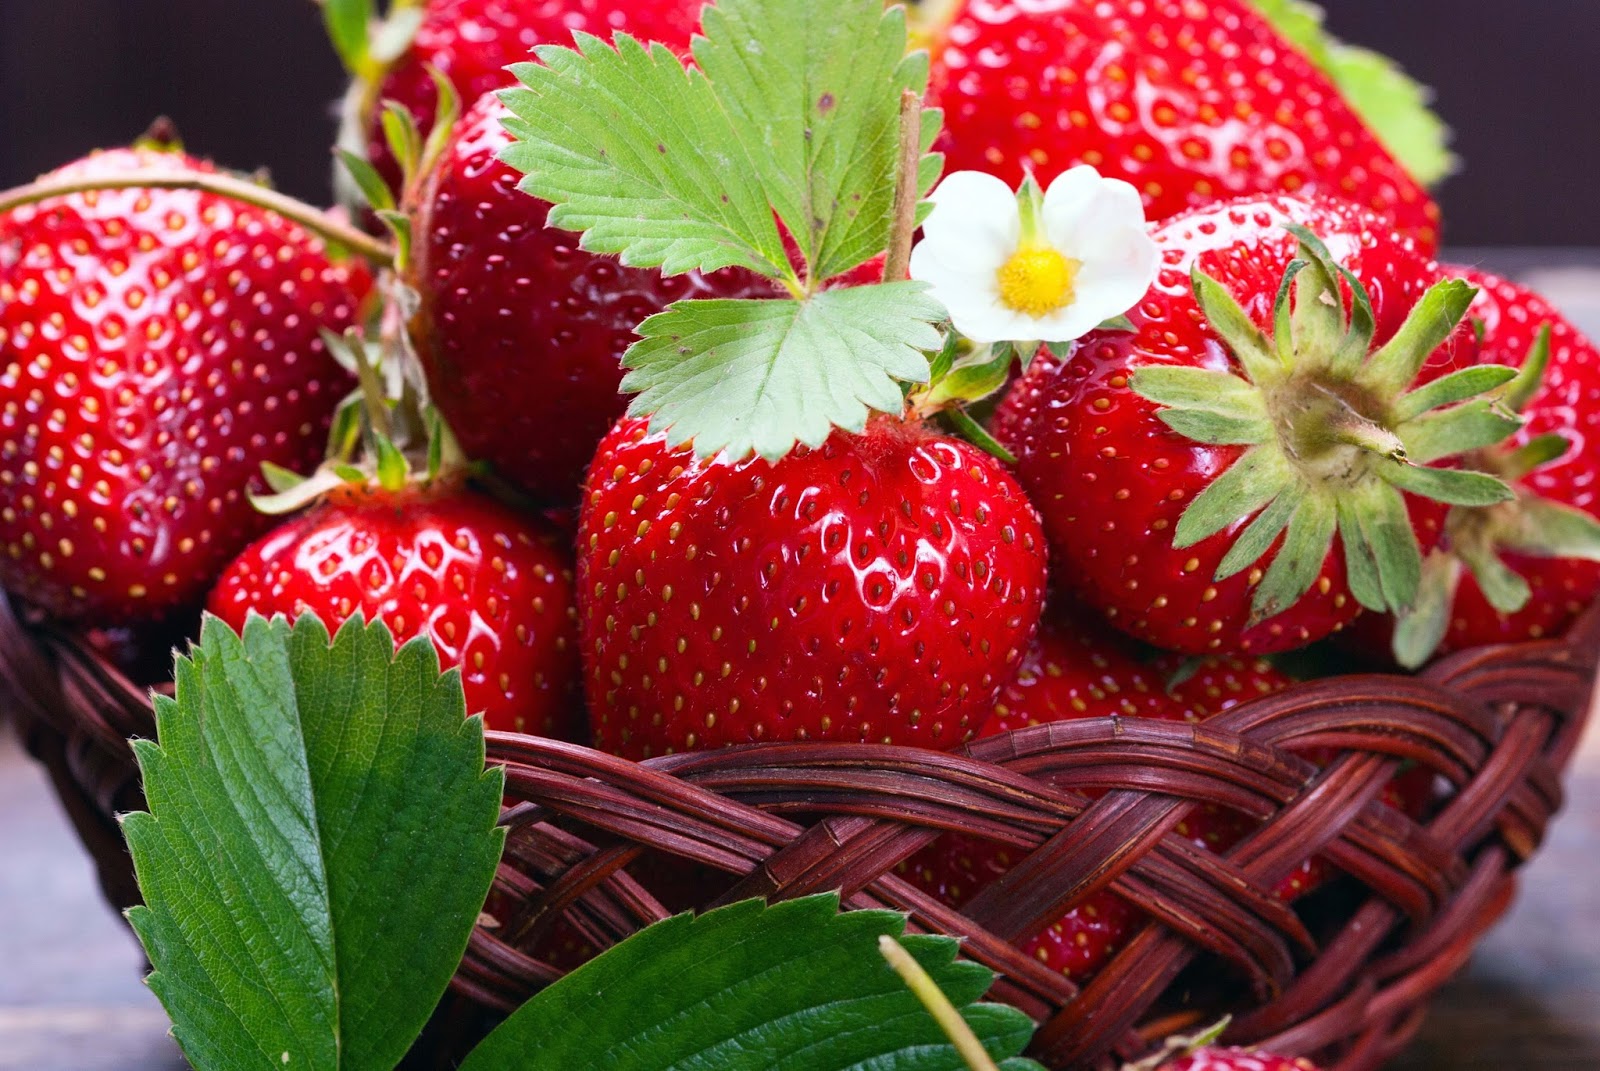 Strawberry Pics Images Hd - Mix Fruits Wallpaper Hd Hd - HD Wallpaper 